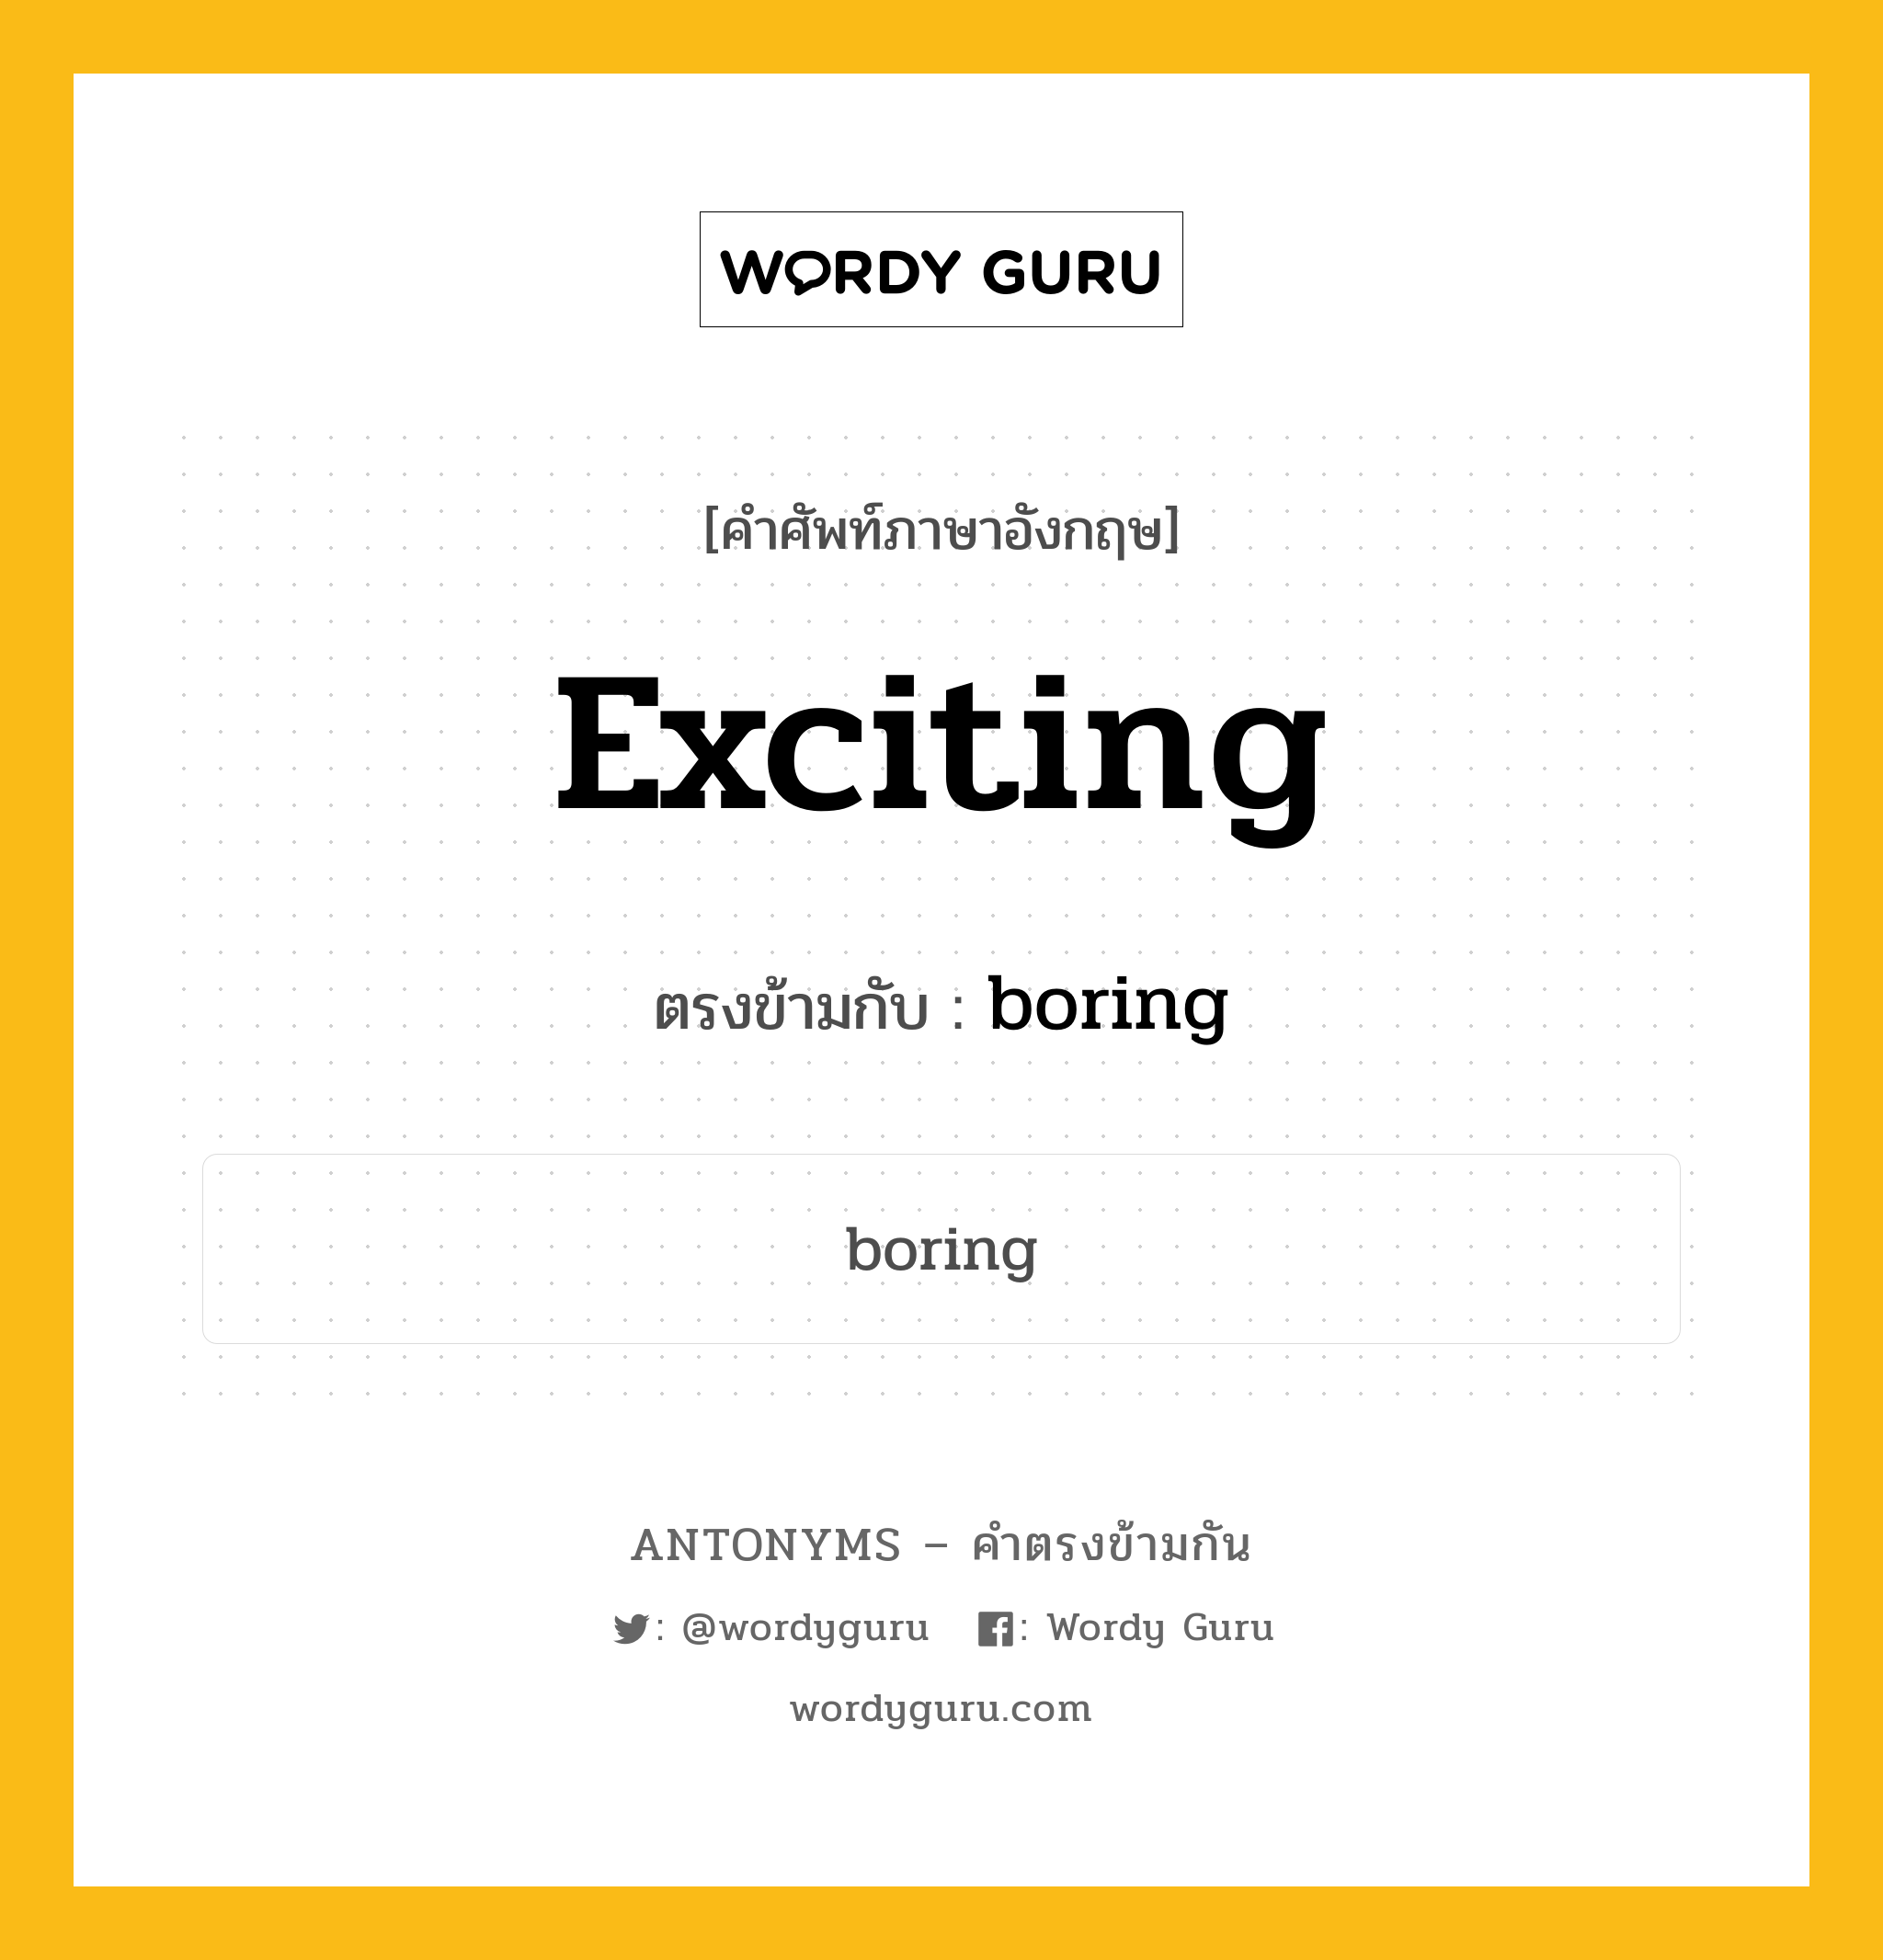 exciting เป็นคำตรงข้ามกับคำไหนบ้าง?, คำศัพท์ภาษาอังกฤษ exciting ตรงข้ามกับ boring หมวด boring